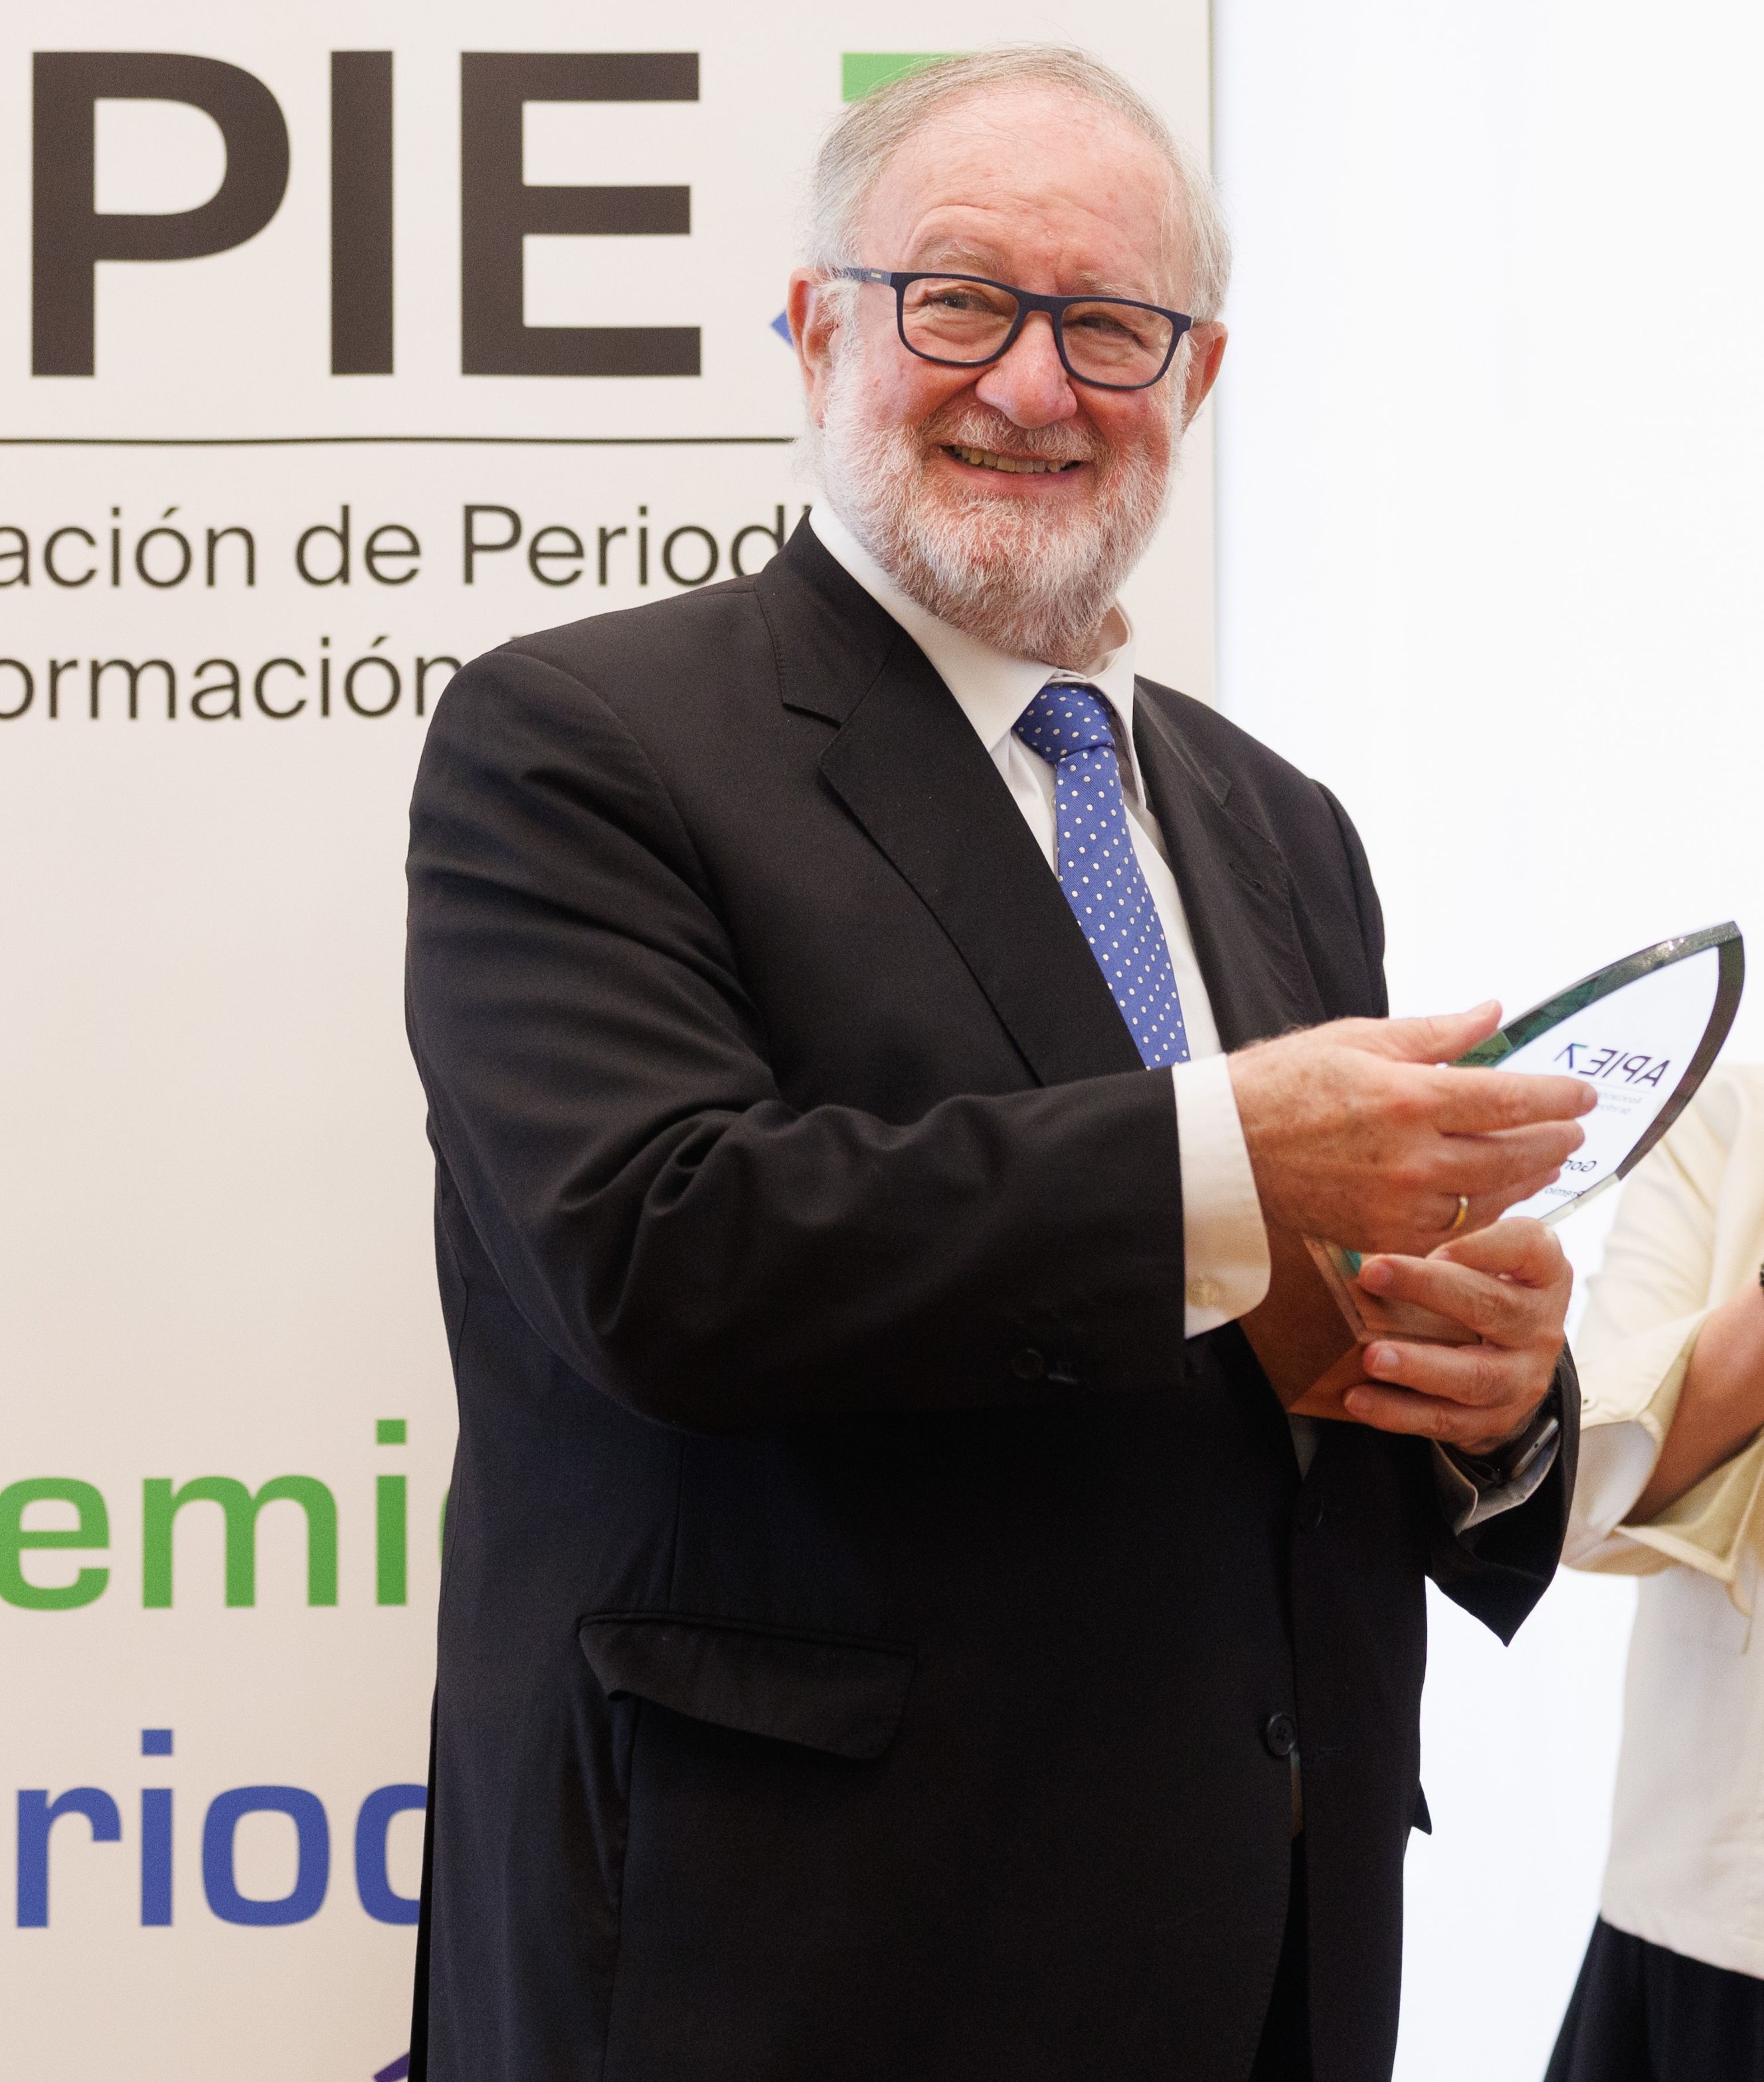 González Urbaneja, I Premio de Periodismo Económico de la APIE